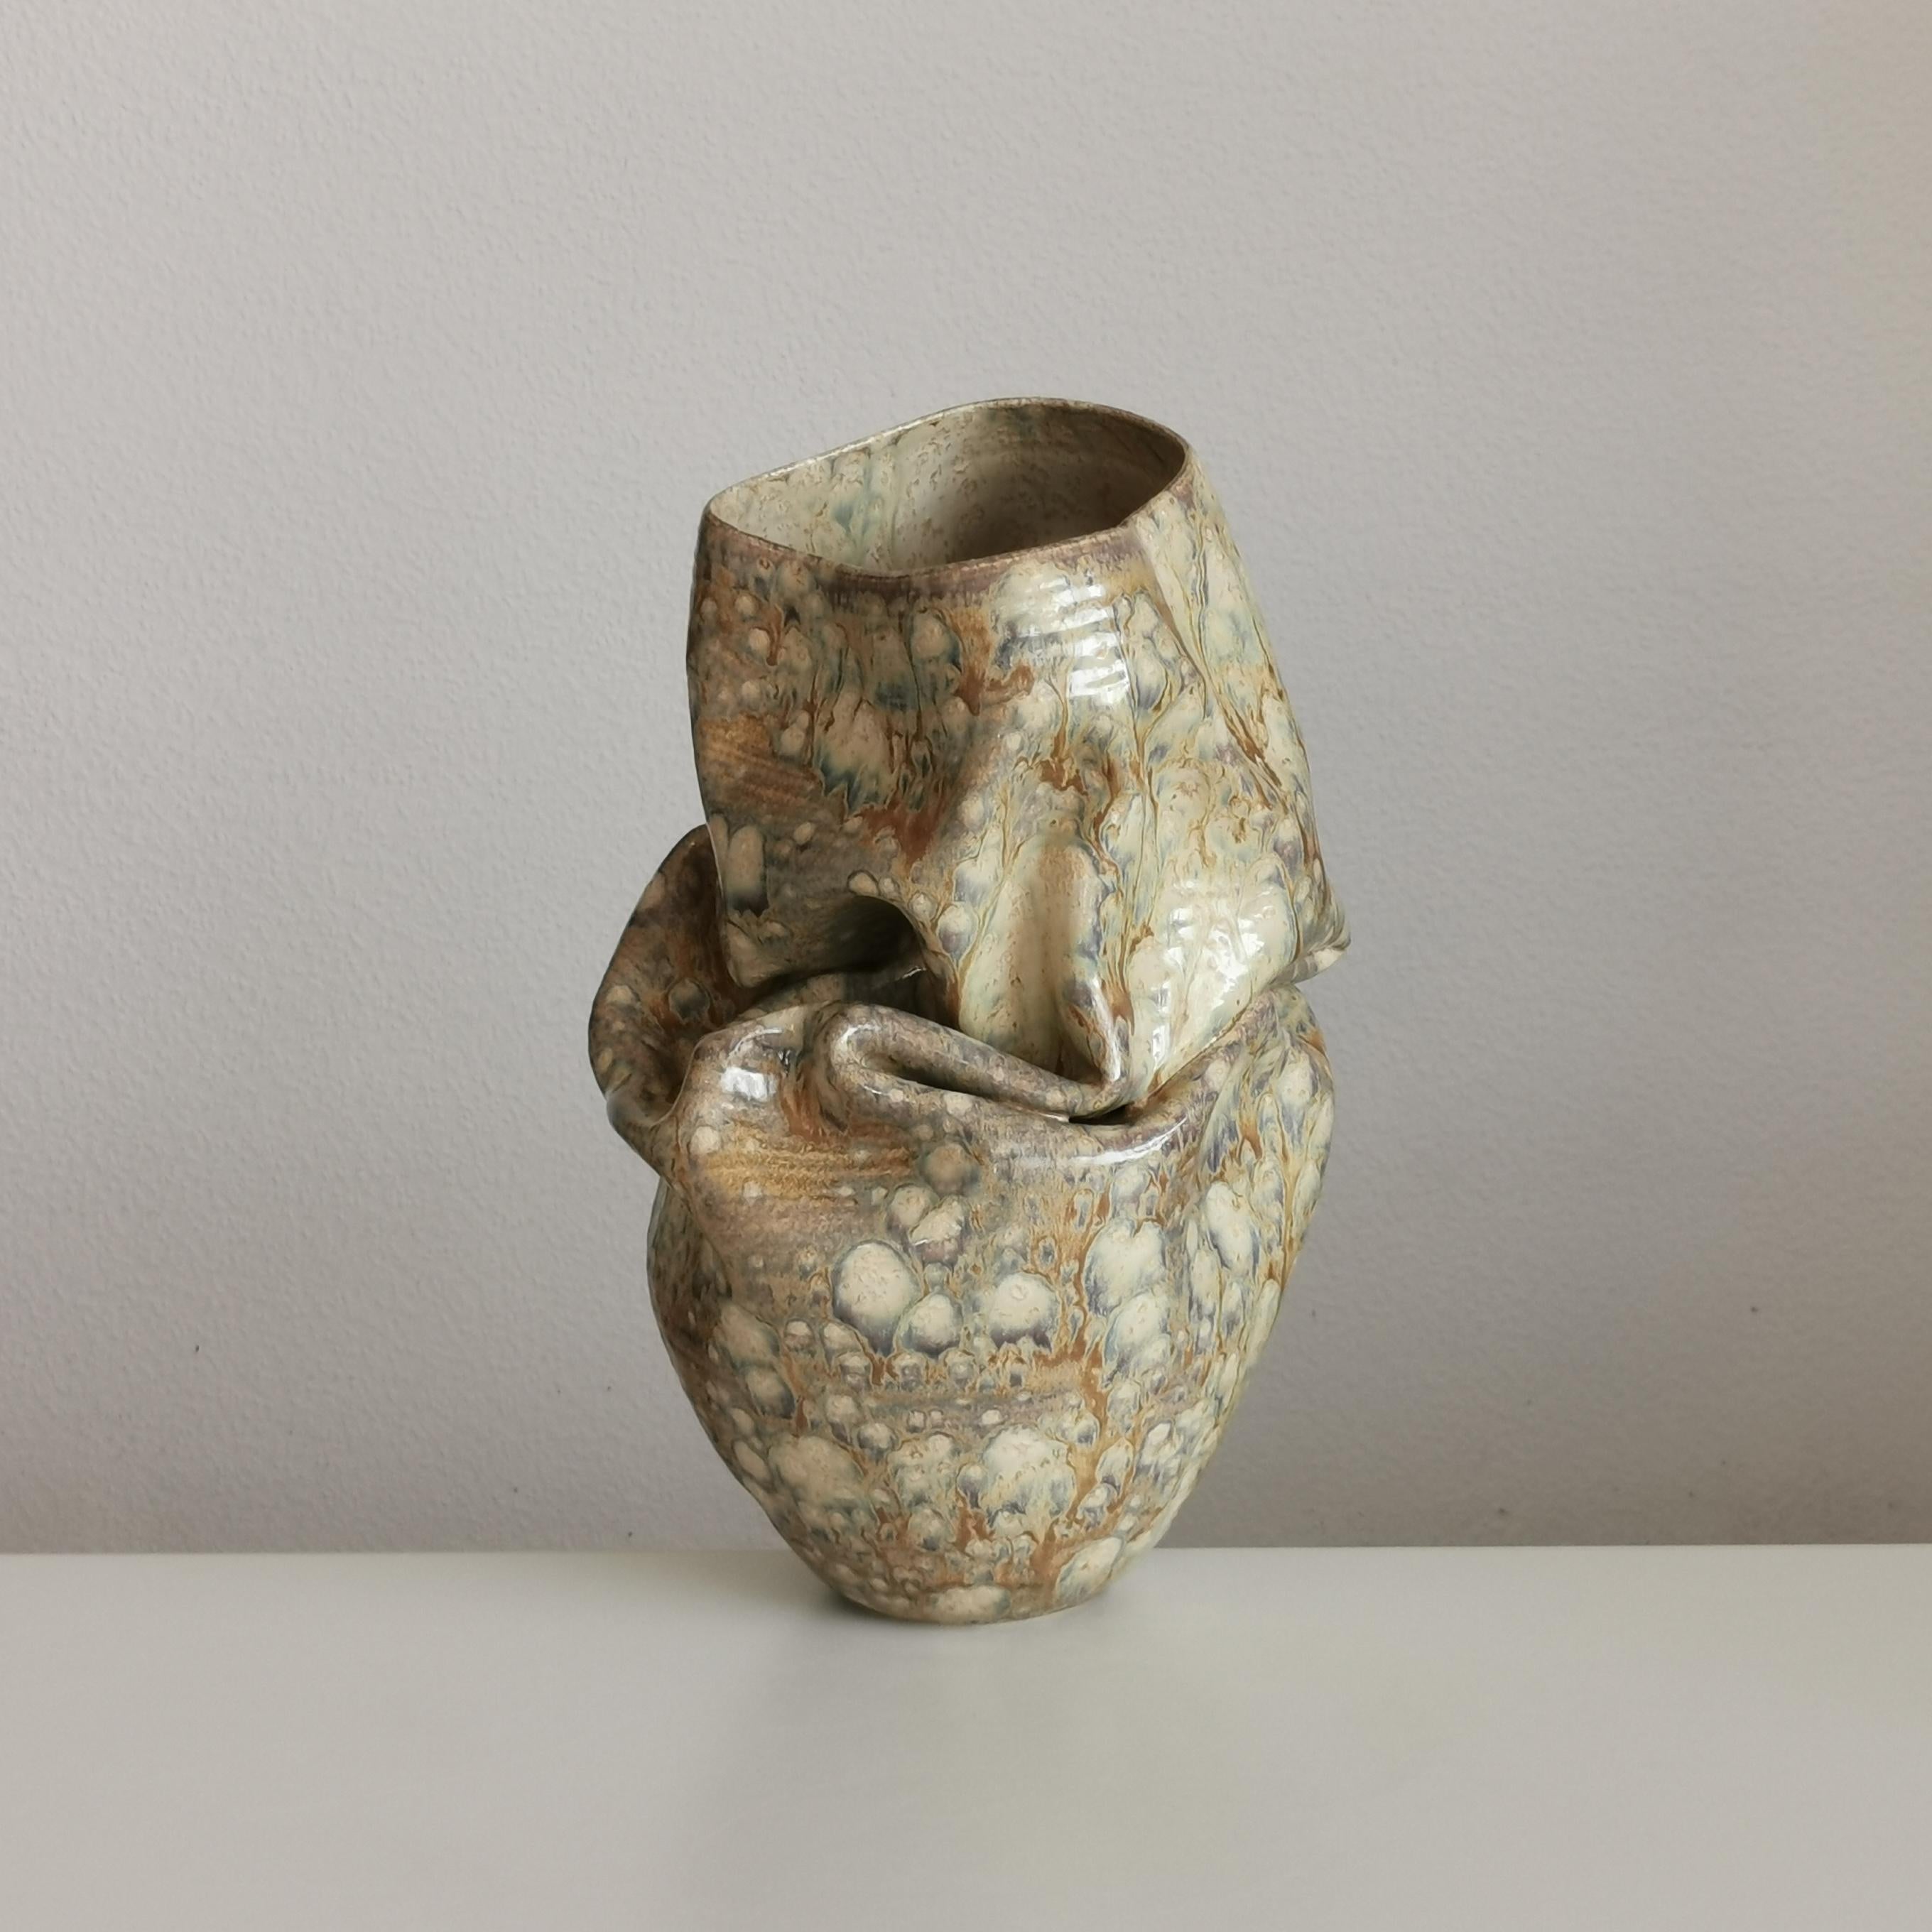 Spanish Medium Collapsed Crumpled Form, Desert Dusk, Vessel No.127, Ceramic Sculpture For Sale